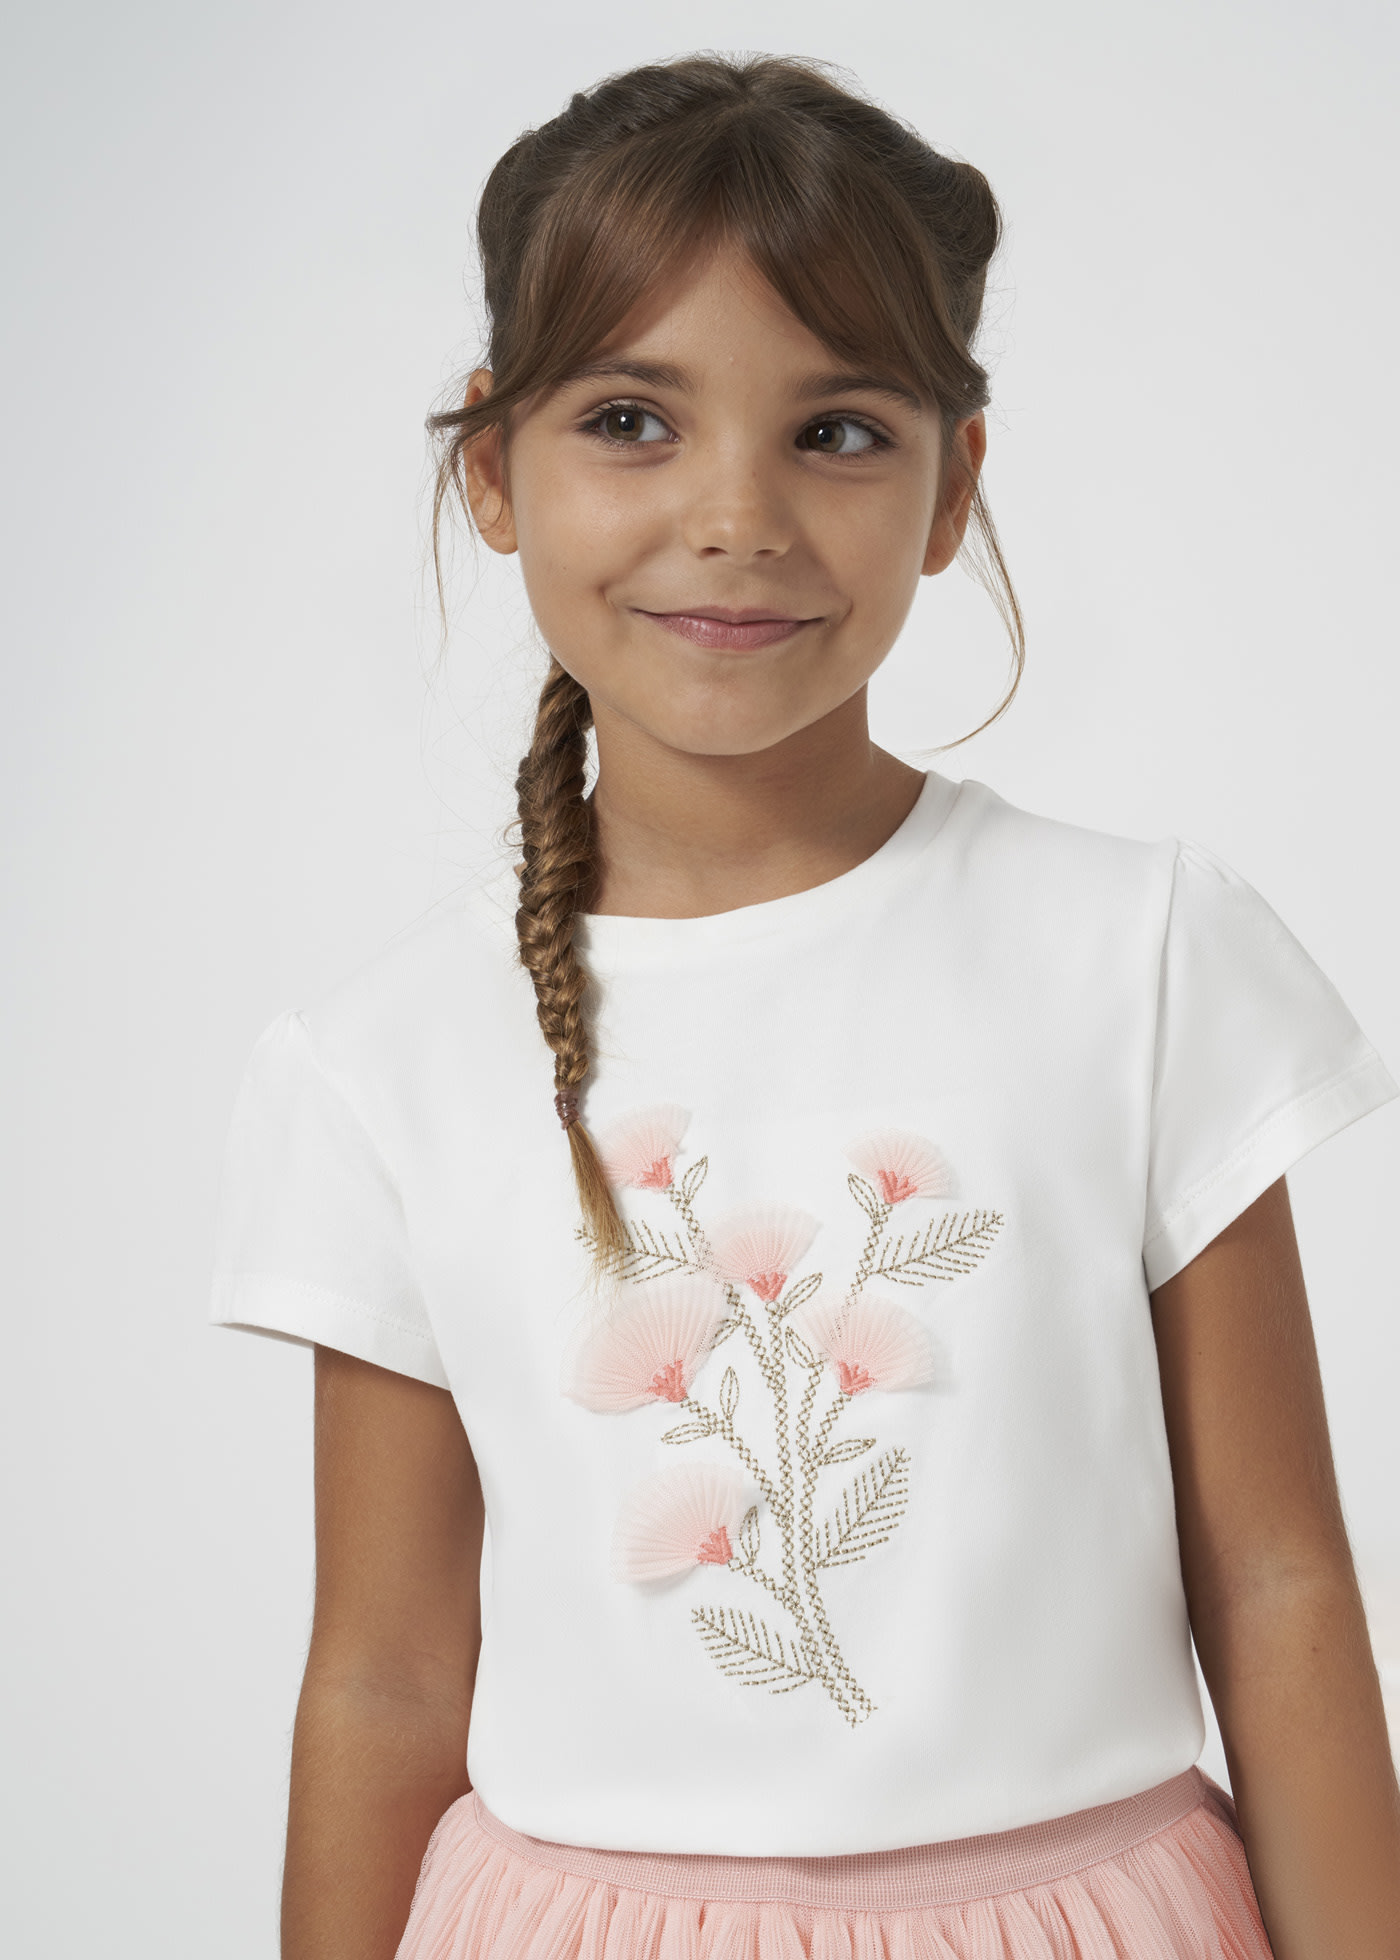 T-Shirt bestickte Blumen Teenager Mädchen